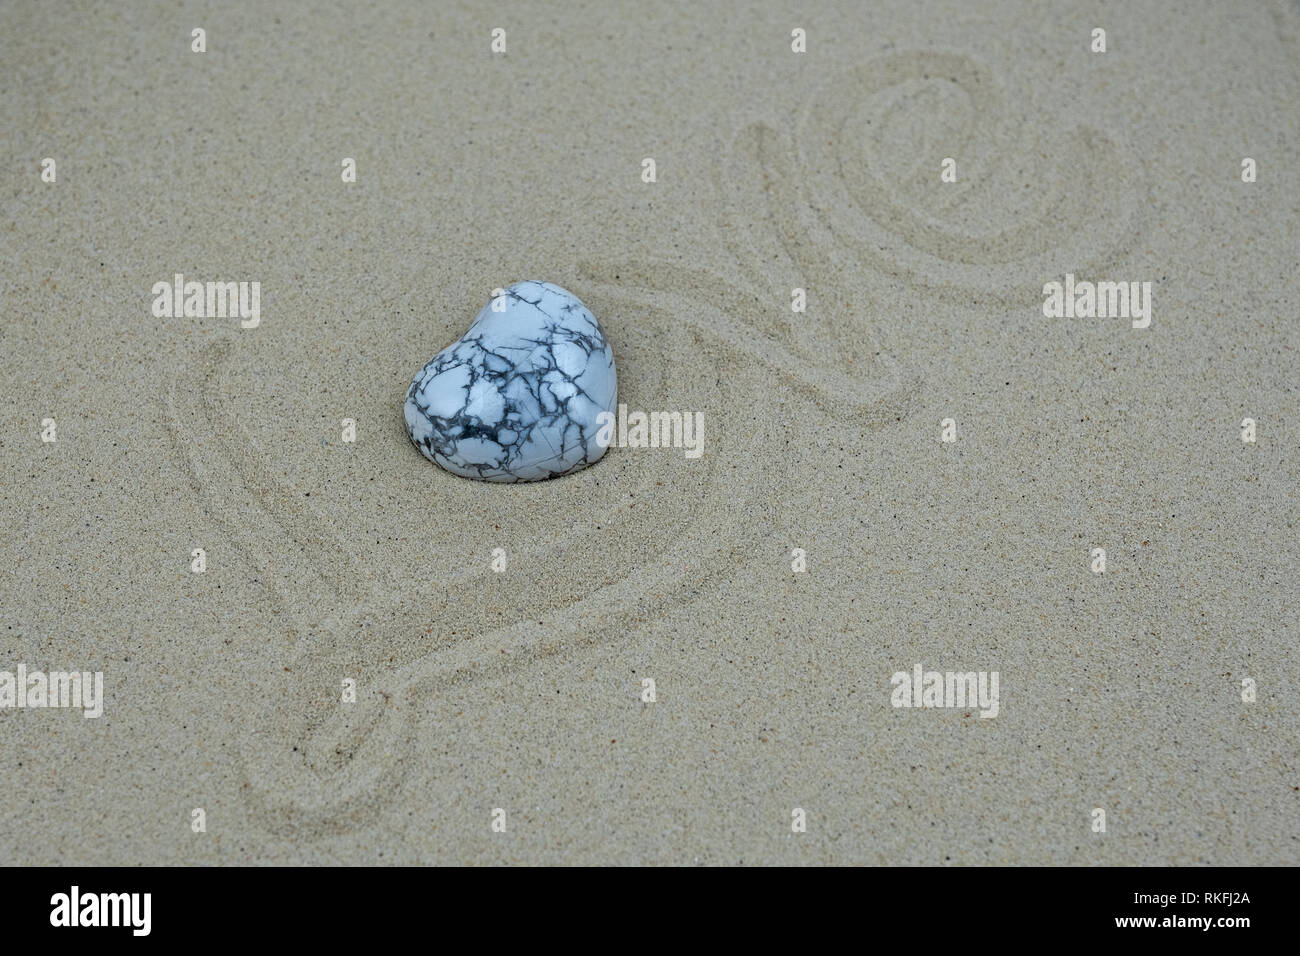 La parola amore scritte sulla sabbia, o sostituito da un cuore di marmo Foto Stock